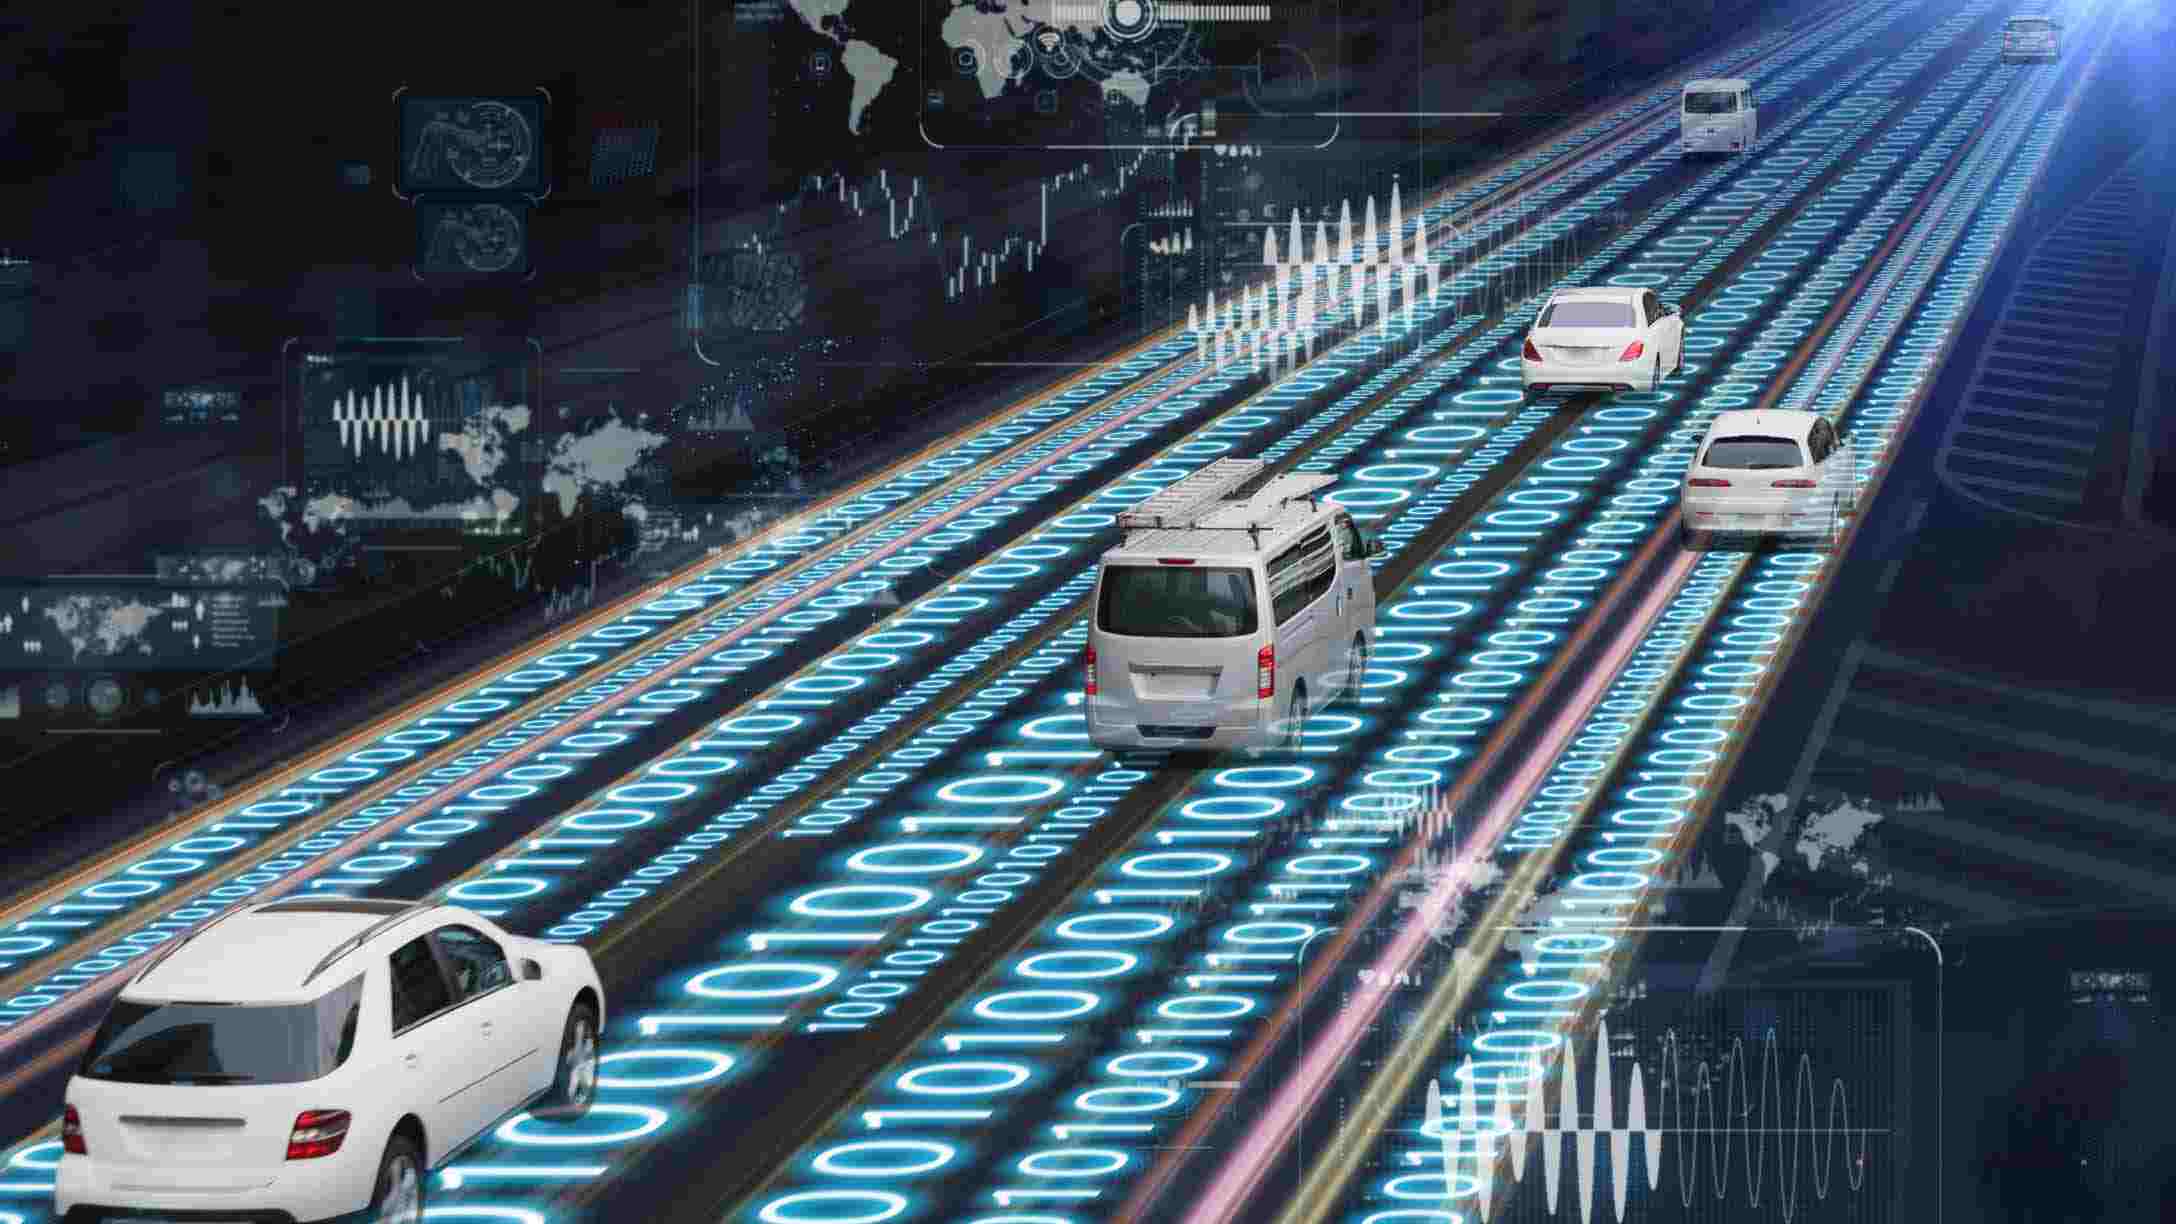 Imagen digital de vehículos conduciendo sobre una autopista de códigos 0 y 1, con información estraída de éstos